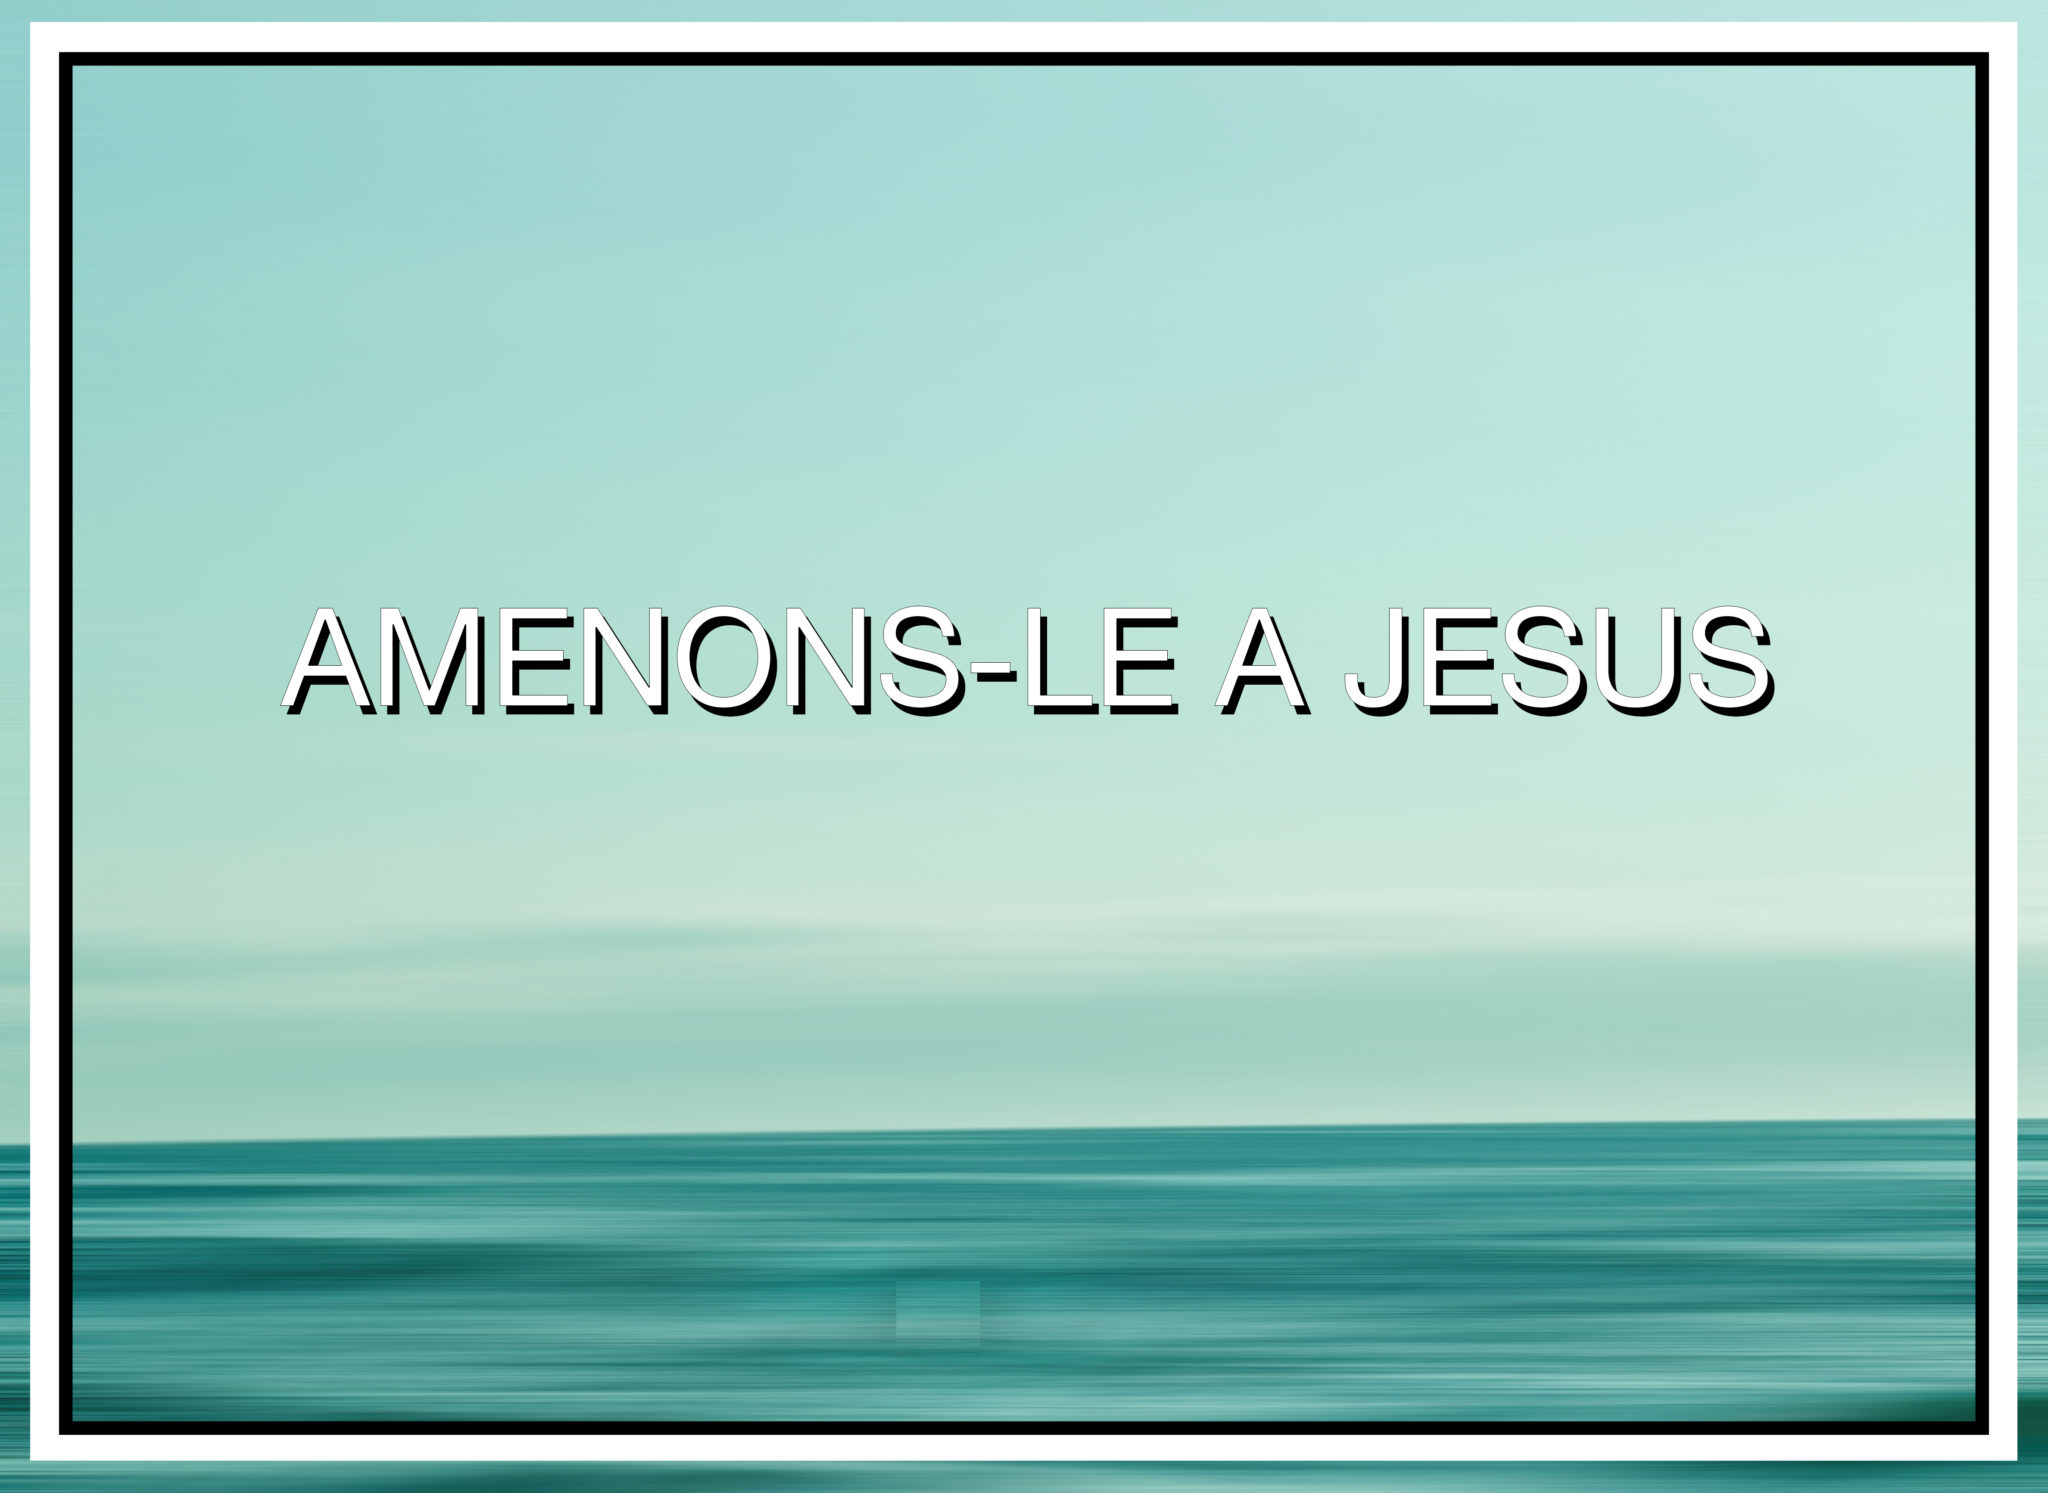 AMENONS-LE A JESUS